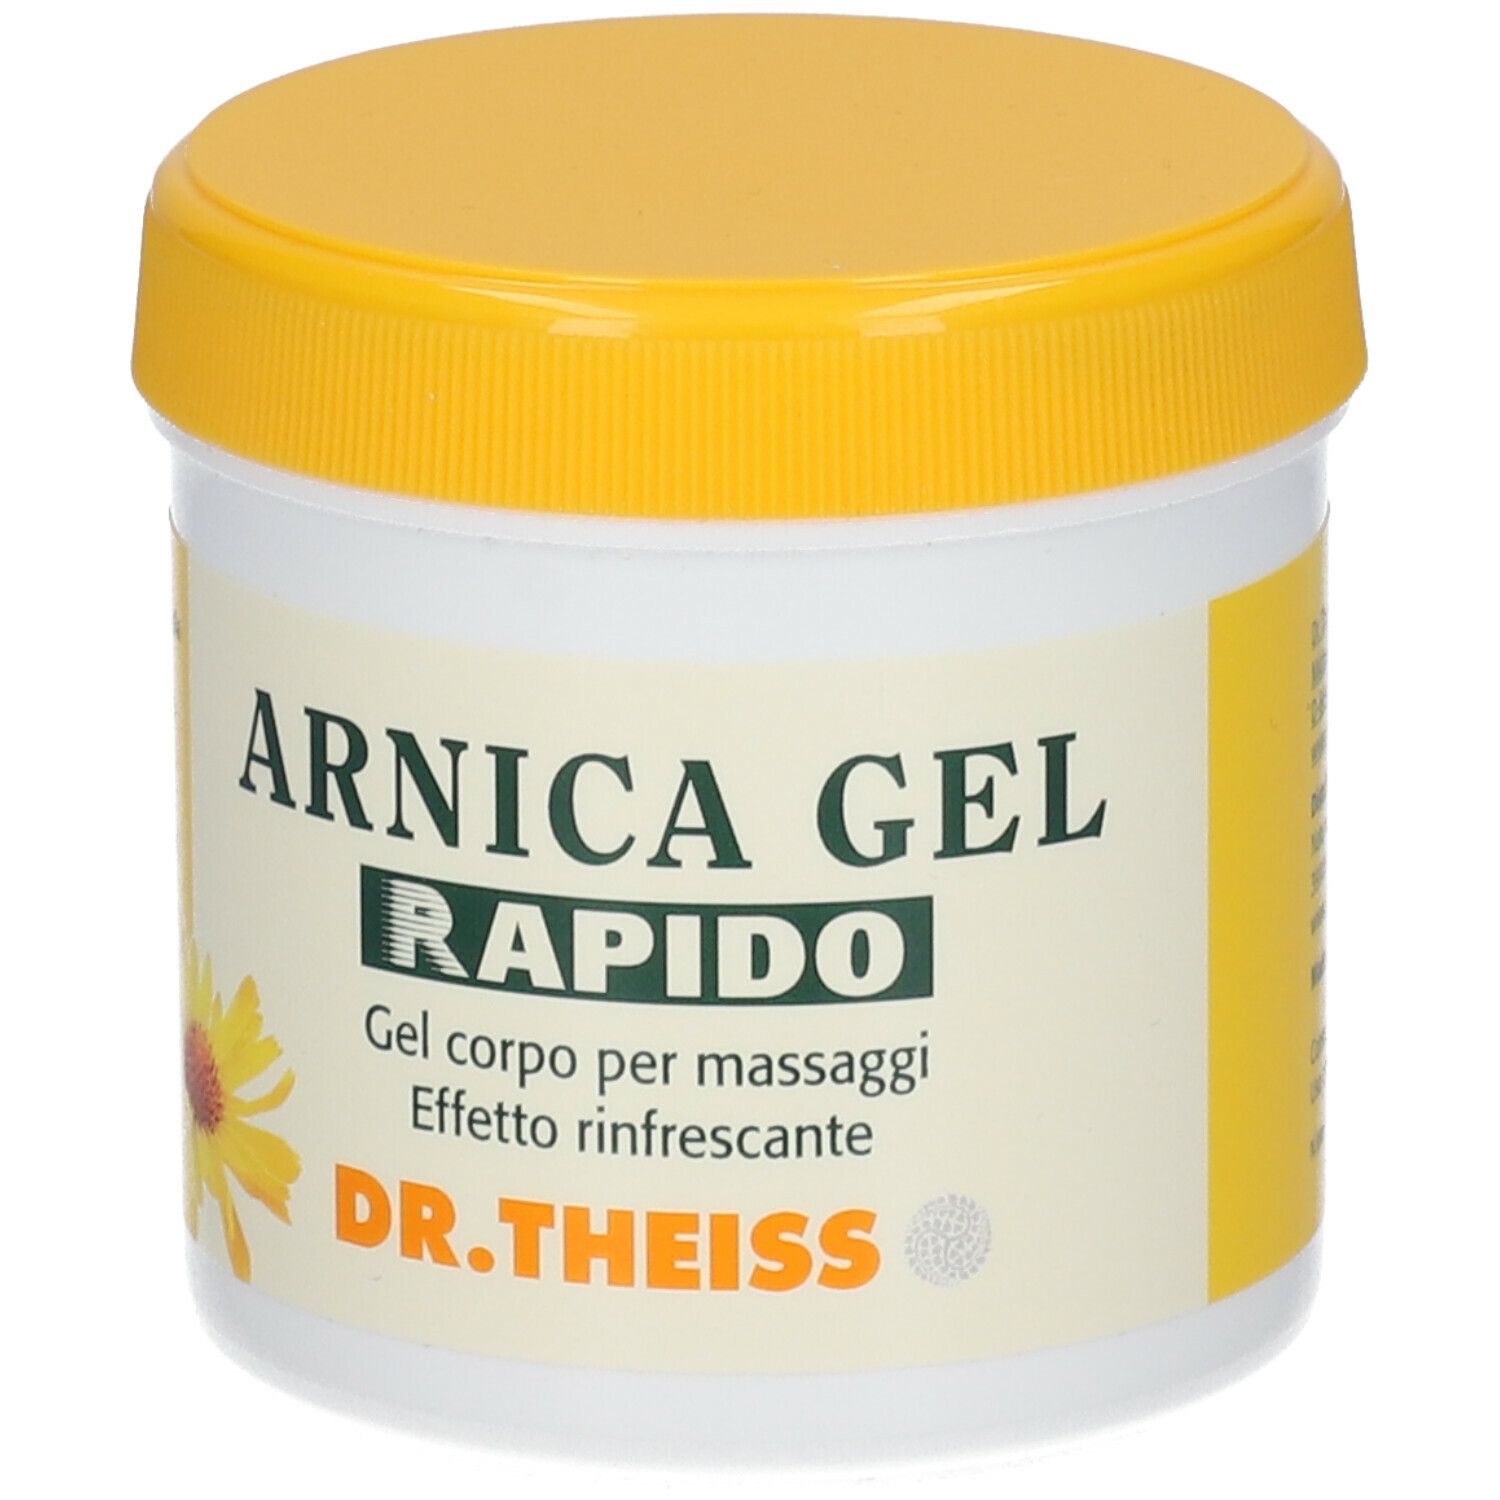 DR THEISS ARNICA GEL RAPIDO - Farmacia Busetti